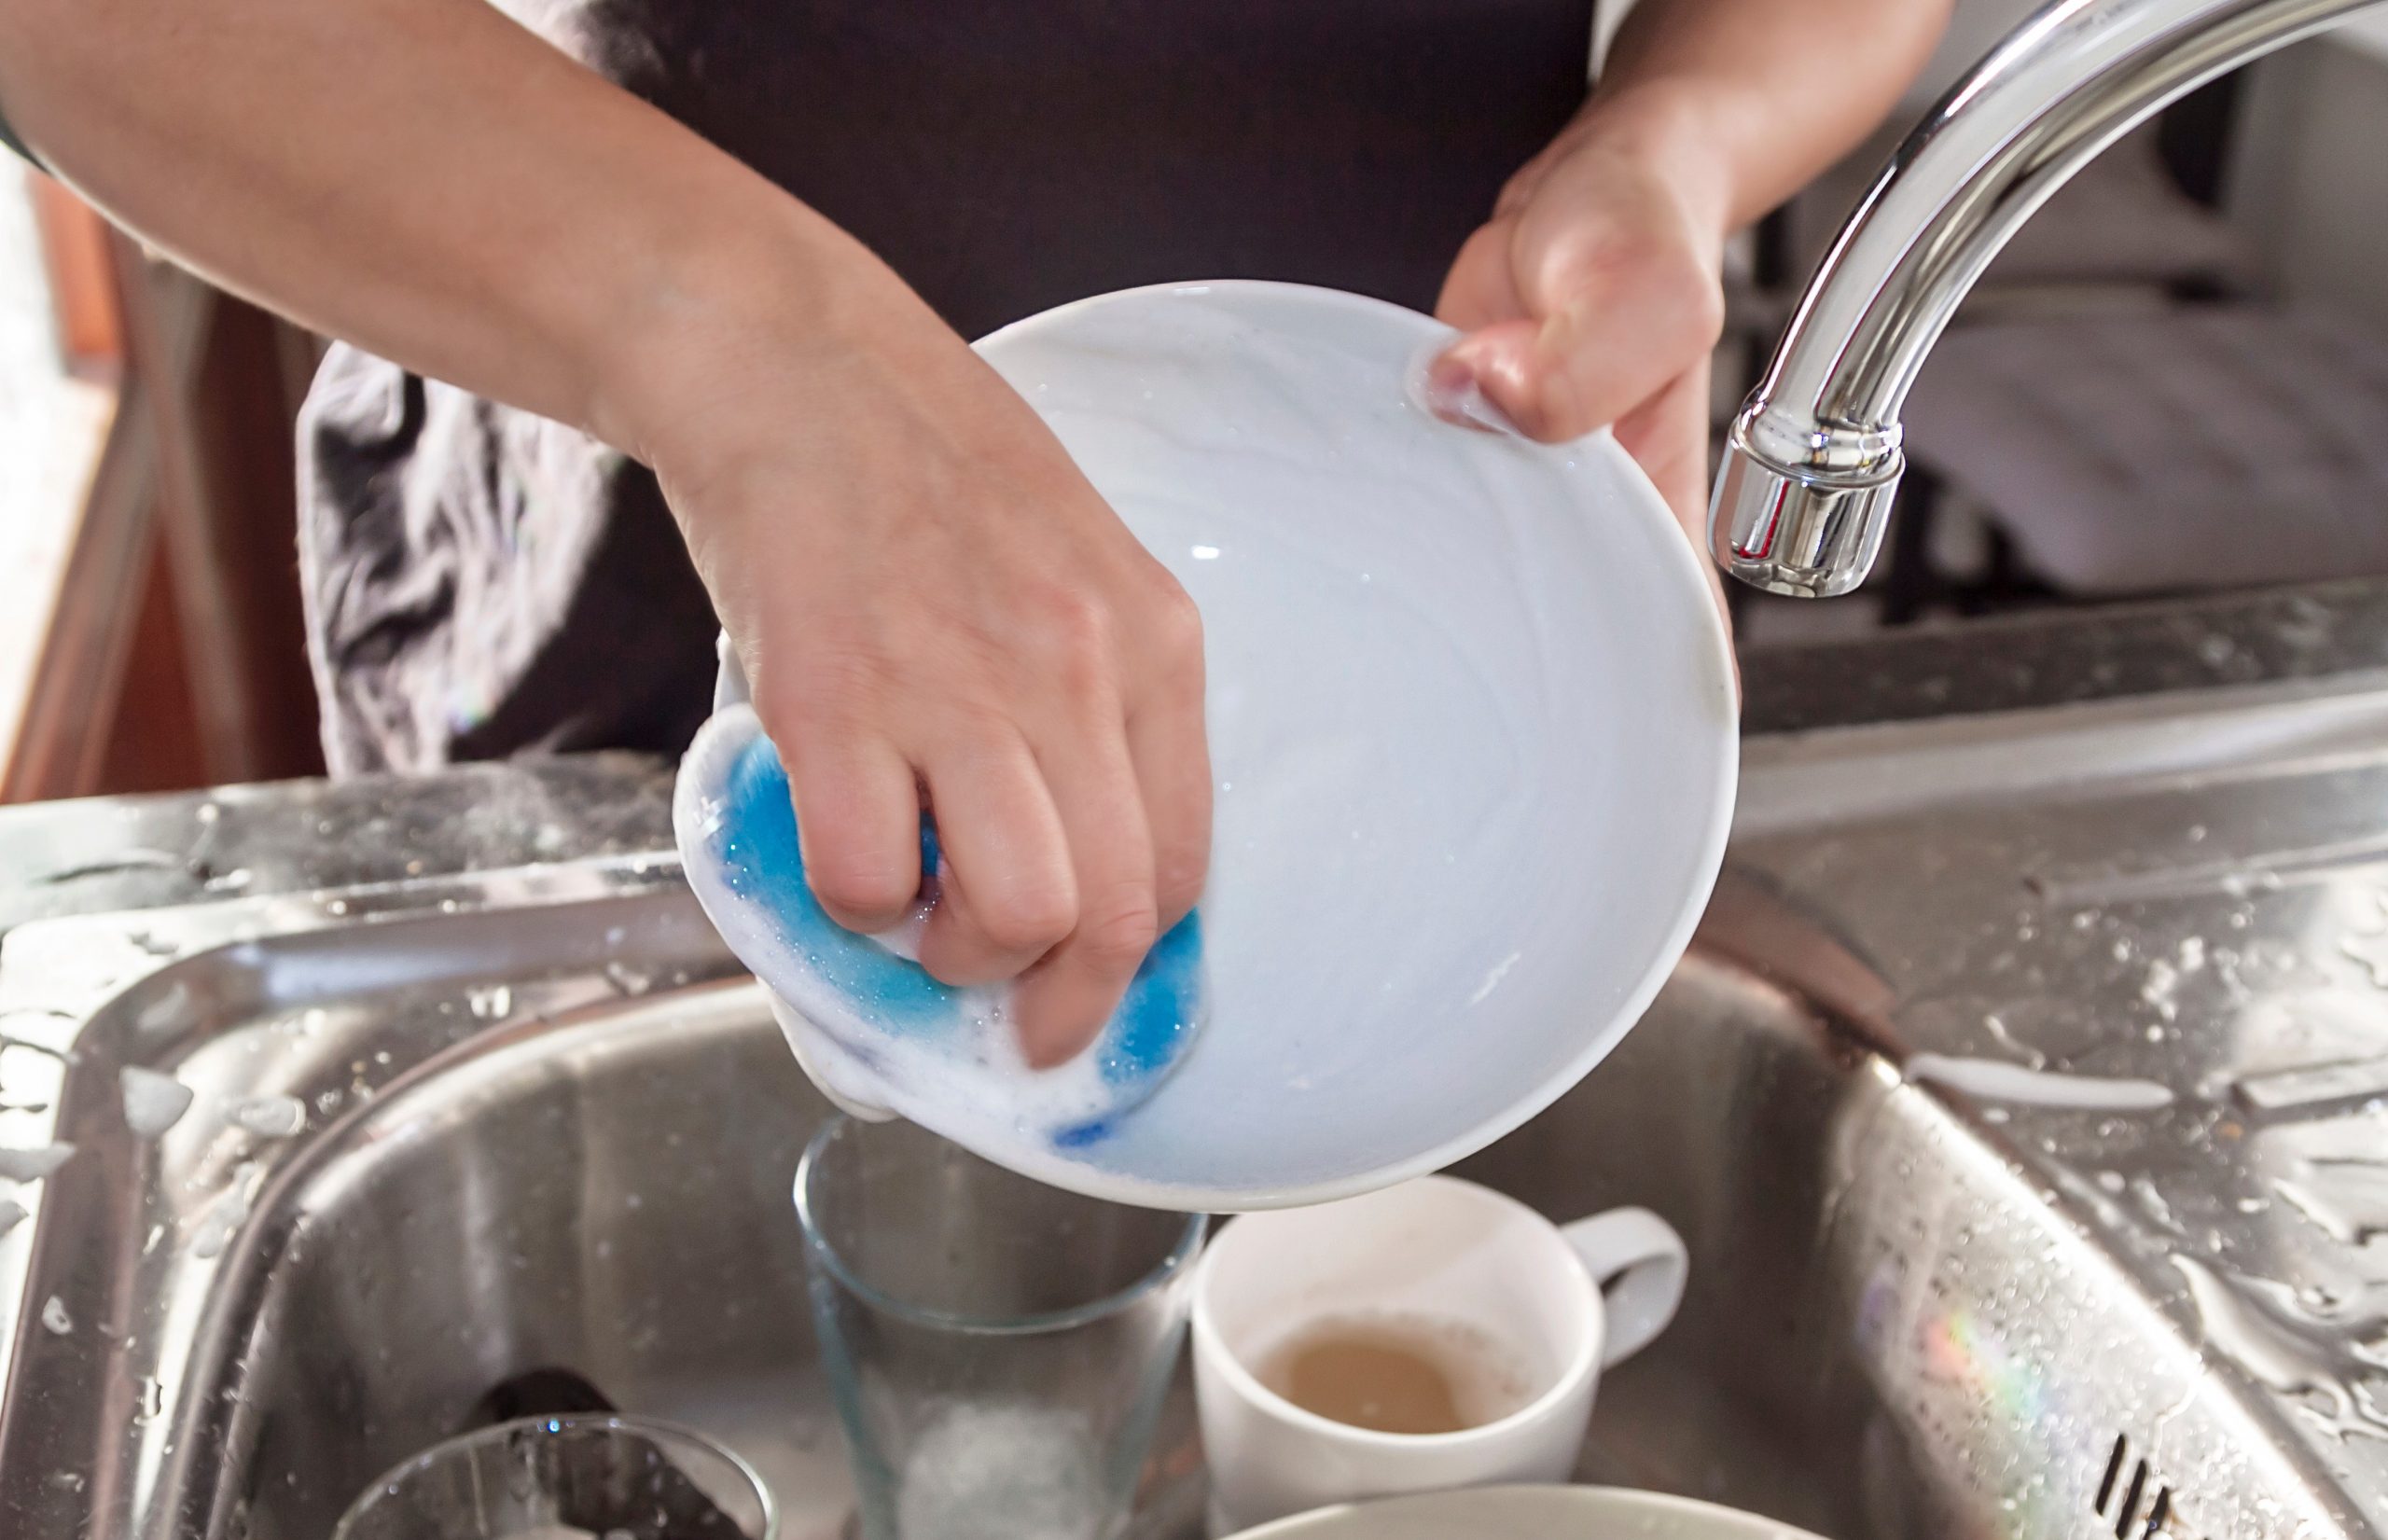 Pessoa com os braços estendidos sobre uma pia inox com poucas peças para lavar. Nas mãos a pessoa ensaboa um prato branco. A torneira está fechada